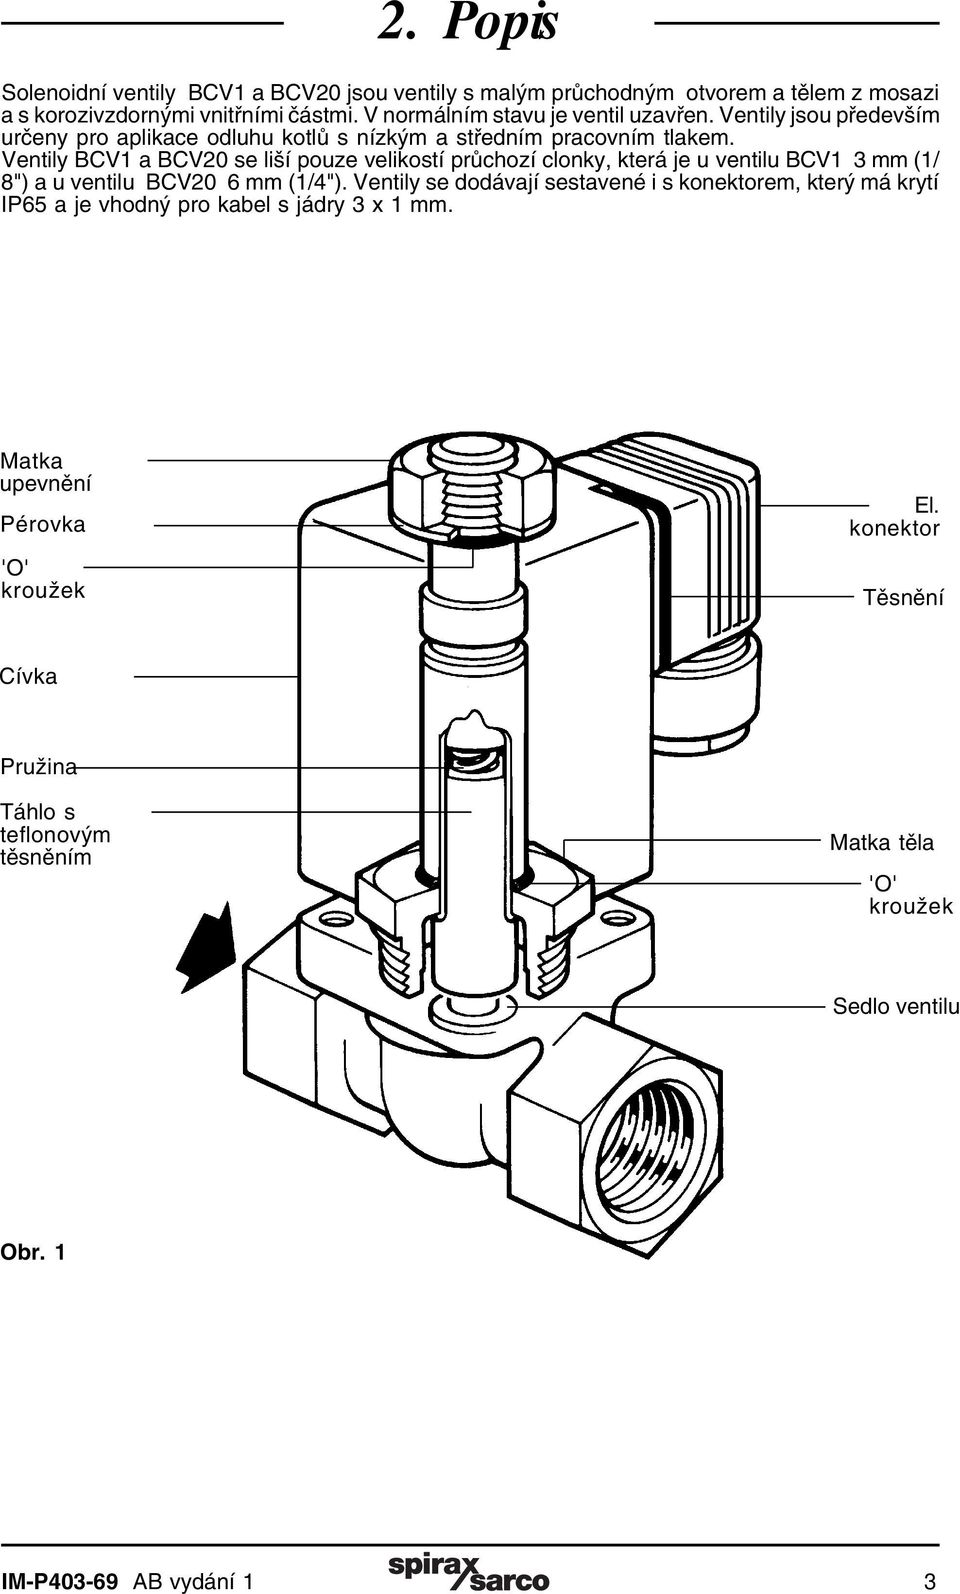 Ventily BCV1 a BCV20 se liší pouze velikostí průchozí clonky, která je u ventilu BCV1 3 mm (1/ 8") a u ventilu BCV20 6 mm (1/4").